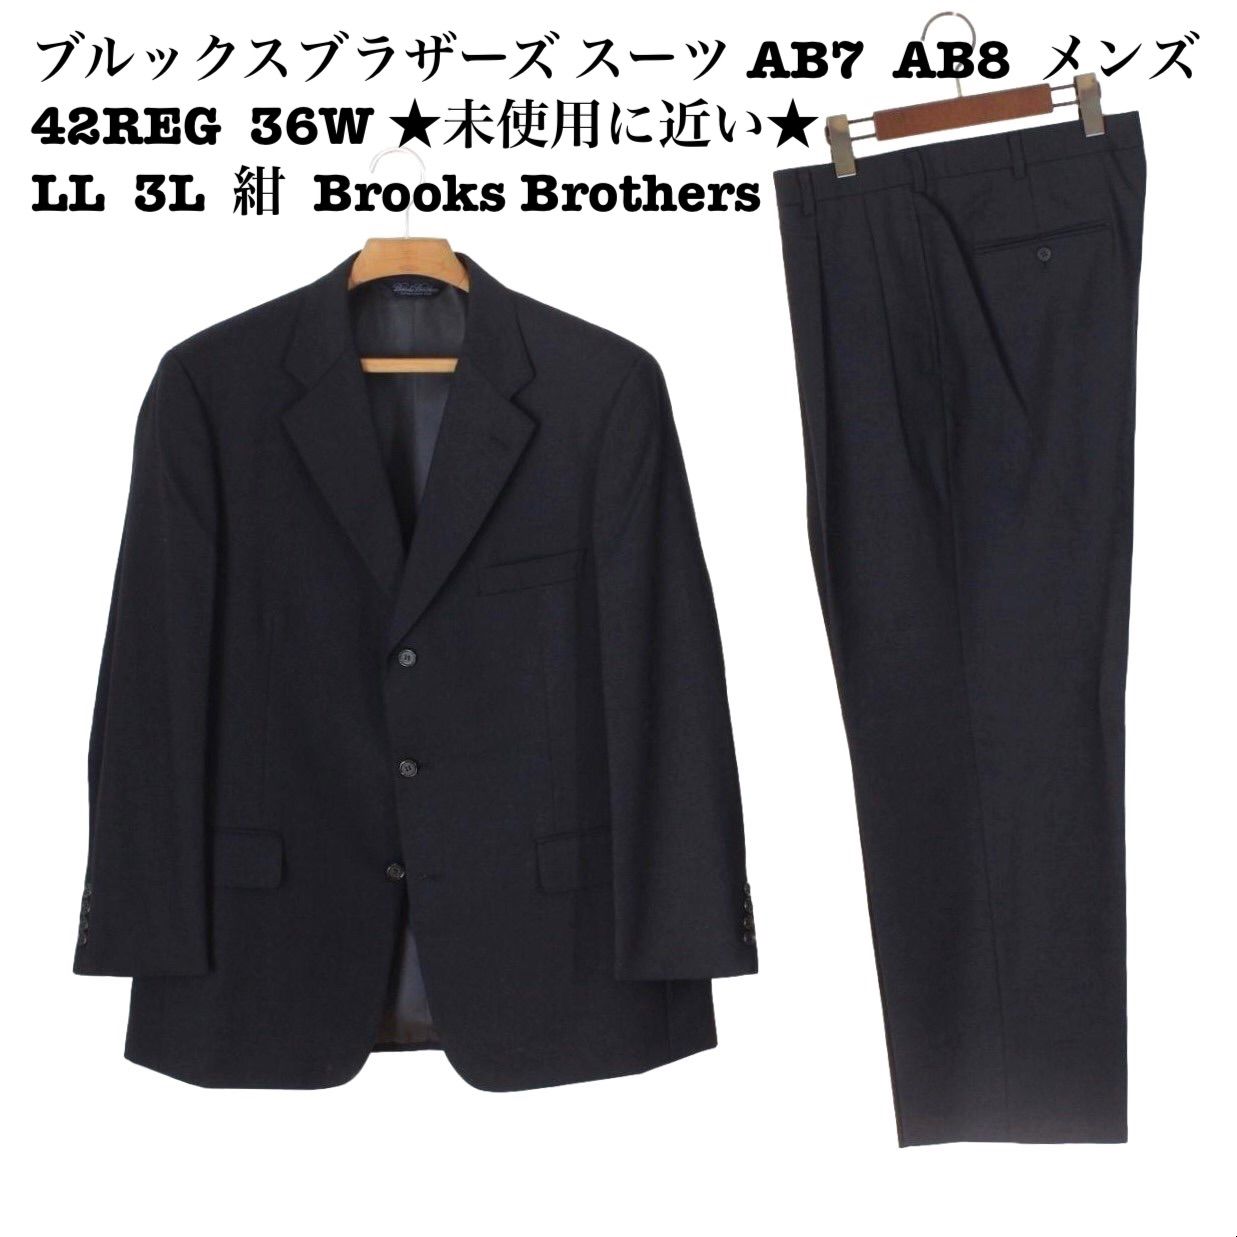 14【極美品】ブルックスブラザーズ スーツ AB7 AB8 メンズ 42REG 36W 